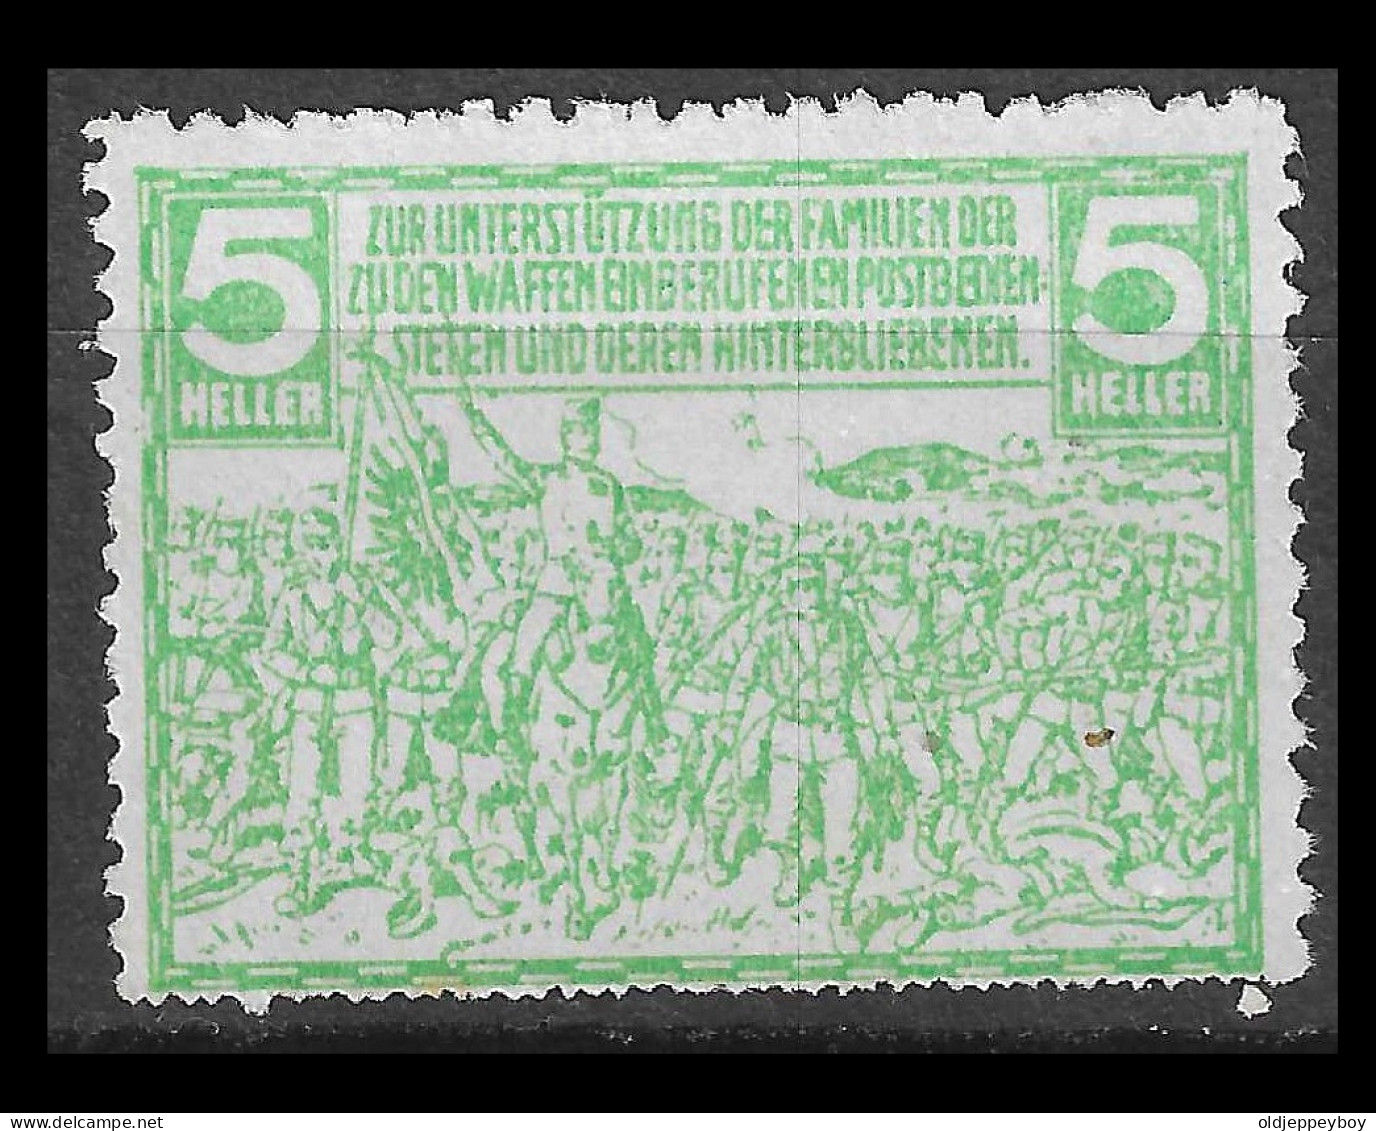 VIGNETTE CINDERELLA Germany AUSTRIA  MILITARIA WW1 1914 - 1918 ZUR UNTERSTUTZUNG DER FAMILIEN DER SUDEN WAFFEN - Rode Kruis